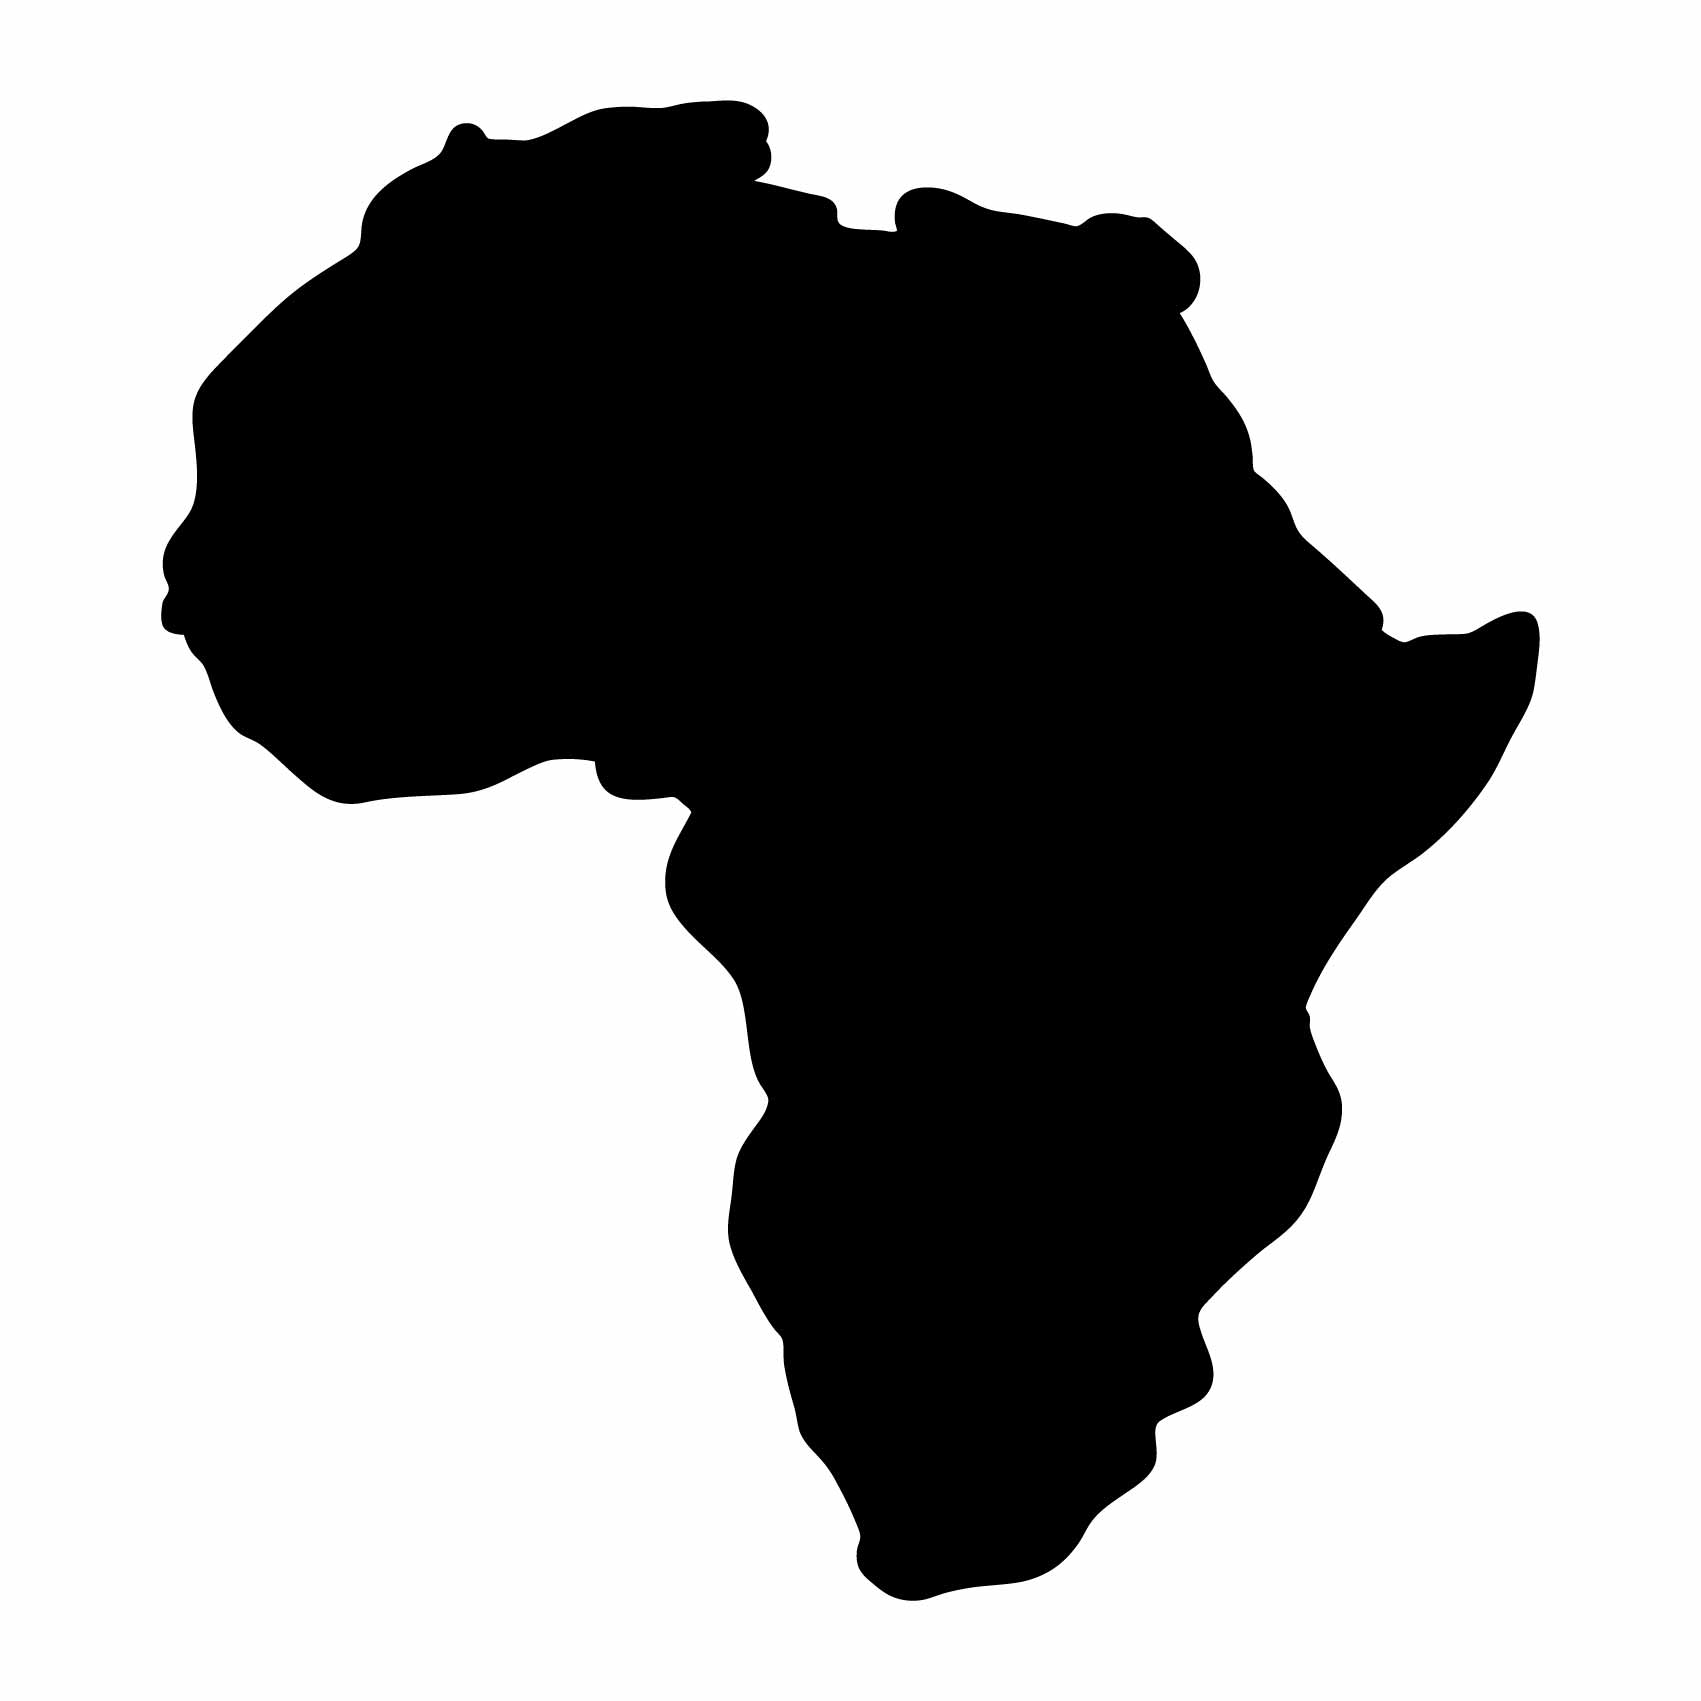 stickers-afrique-ref1afrique-stickers-muraux-afrique-autocollant-deco-mur-salon-chambre-sticker-mural-africa-(2)